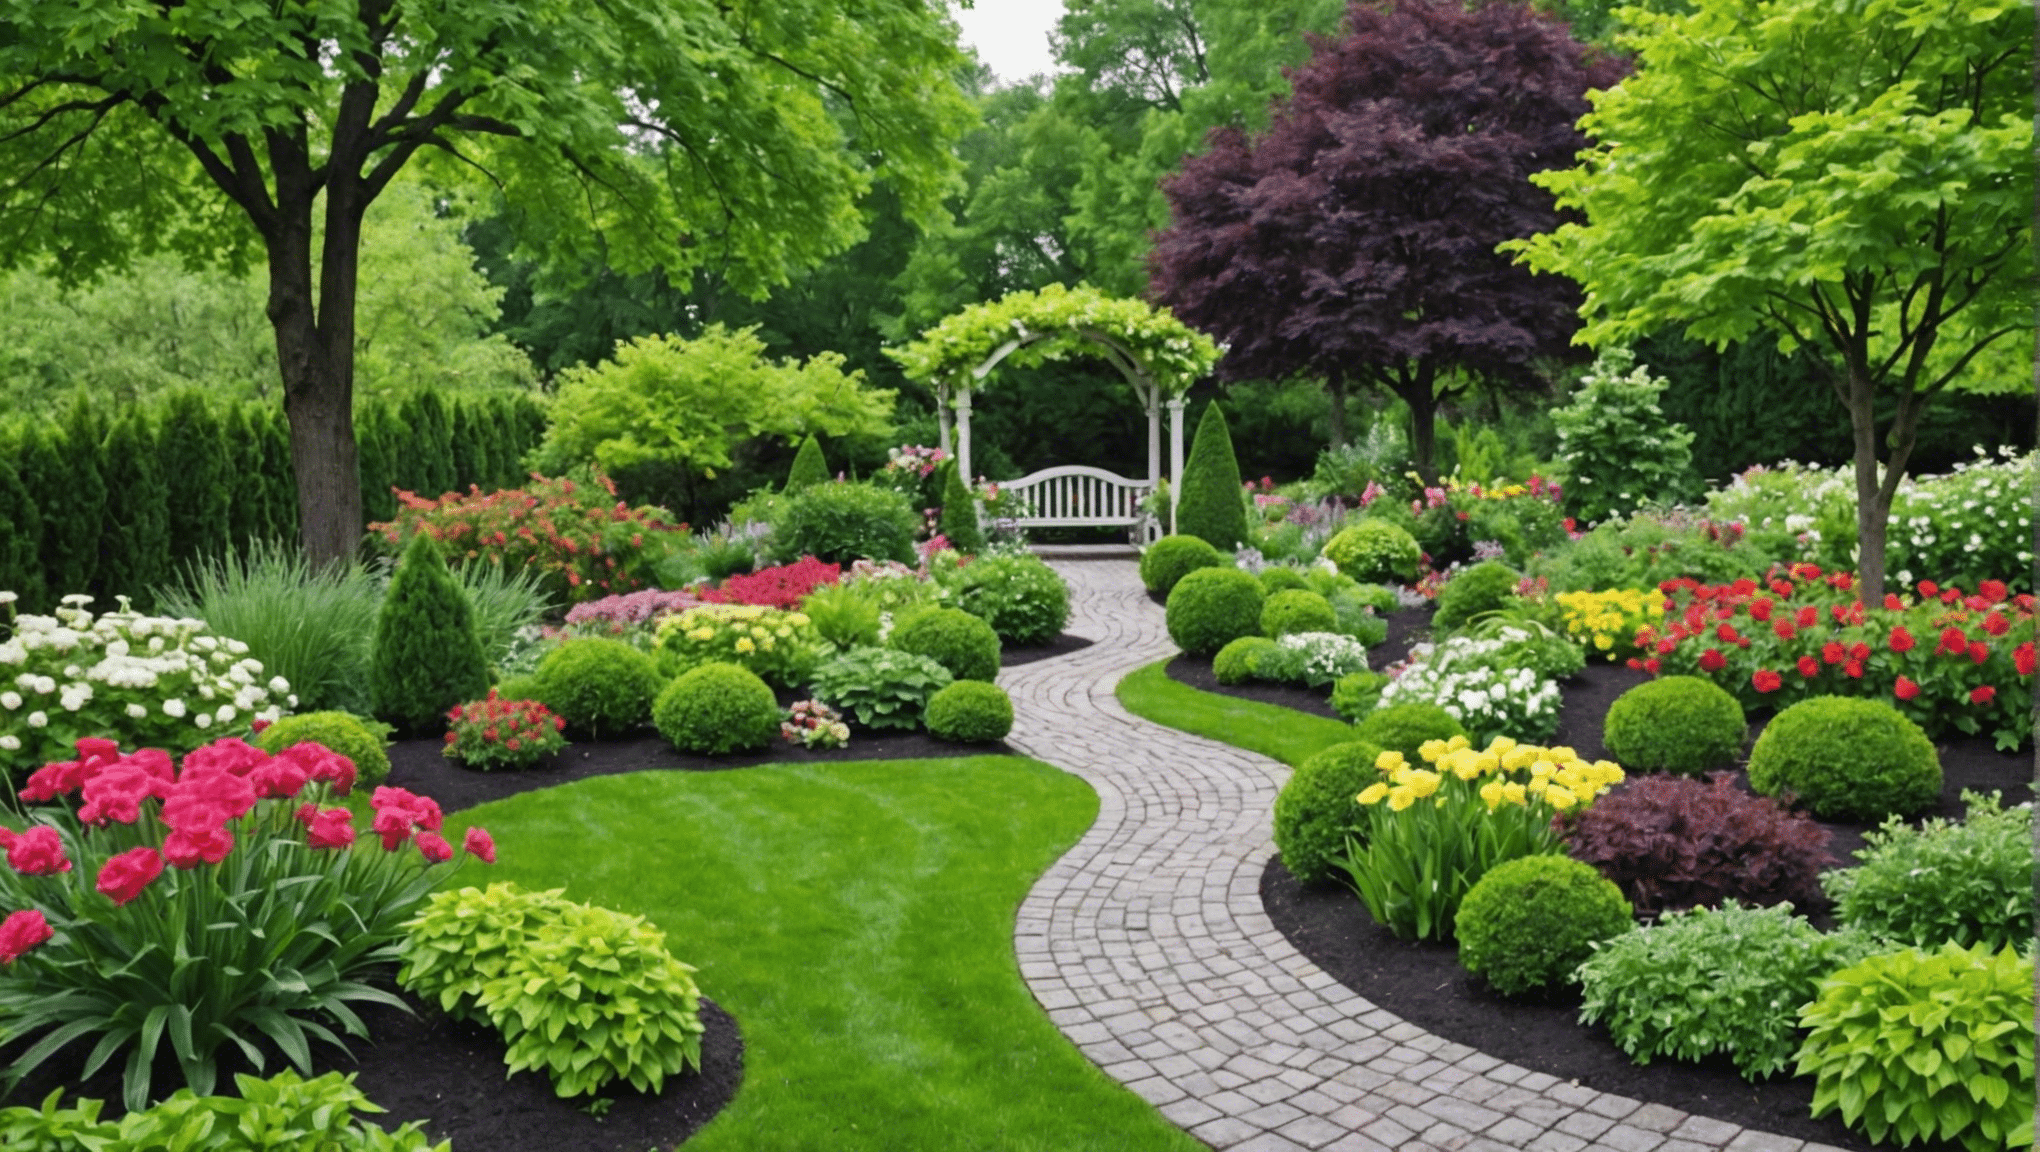 objavte fascinujúce fakty a informácie o záhradníctve, aby ste si rozšírili svoje vedomosti a zlepšili svoje záhradnícke zručnosti. preskúmať záhradnícke drobnosti, tipy a ďalšie.